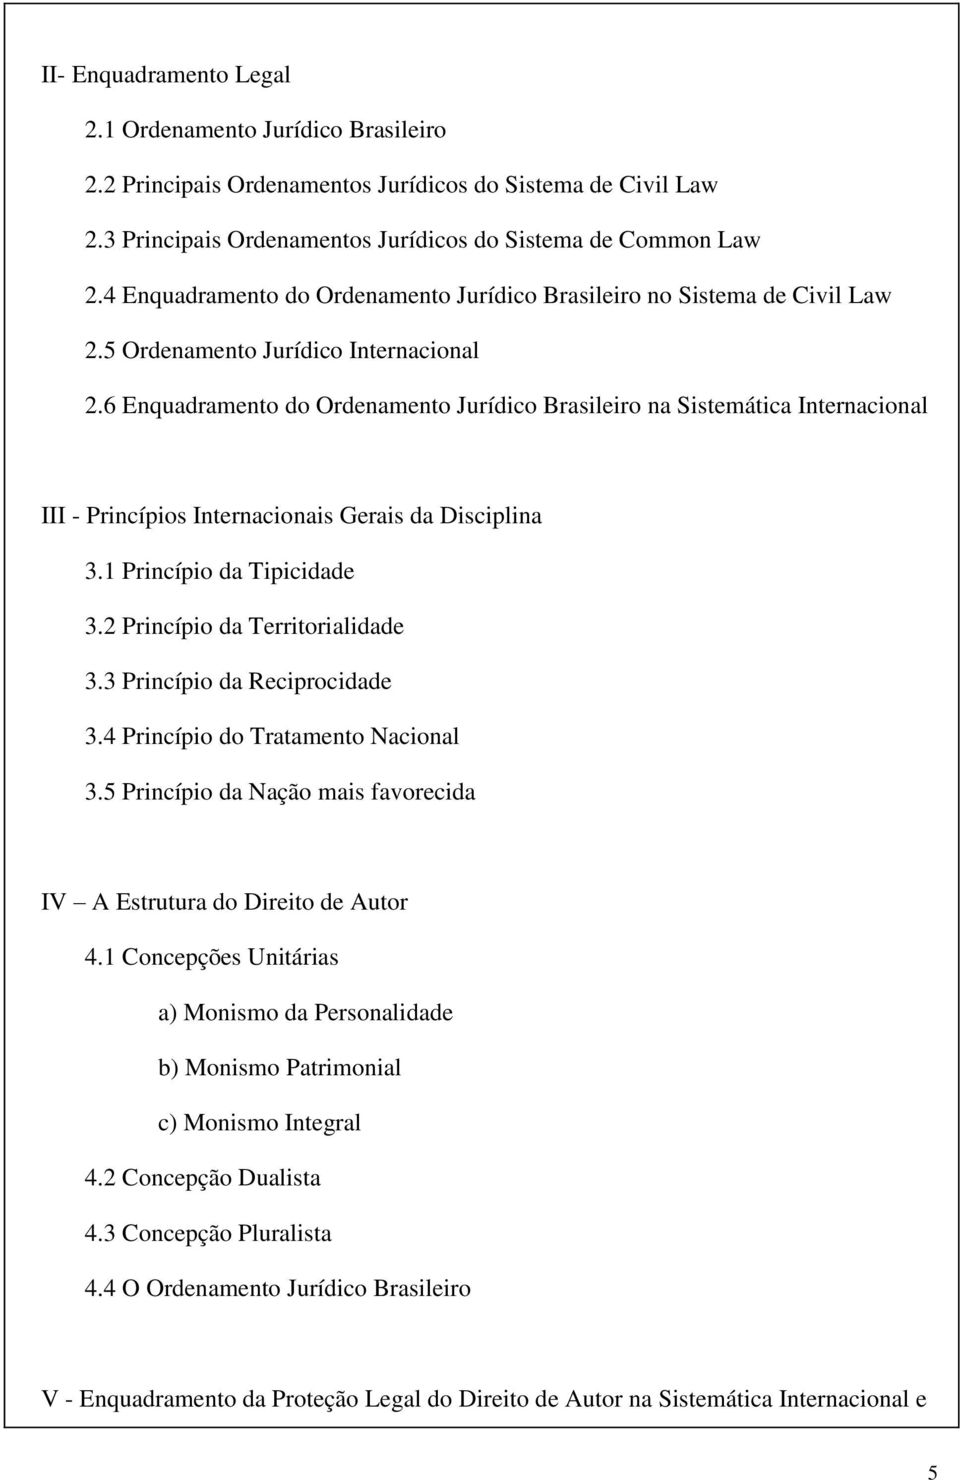 6 Enquadramento do Ordenamento Jurídico Brasileiro na Sistemática Internacional III - Princípios Internacionais Gerais da Disciplina 3.1 Princípio da Tipicidade 3.2 Princípio da Territorialidade 3.